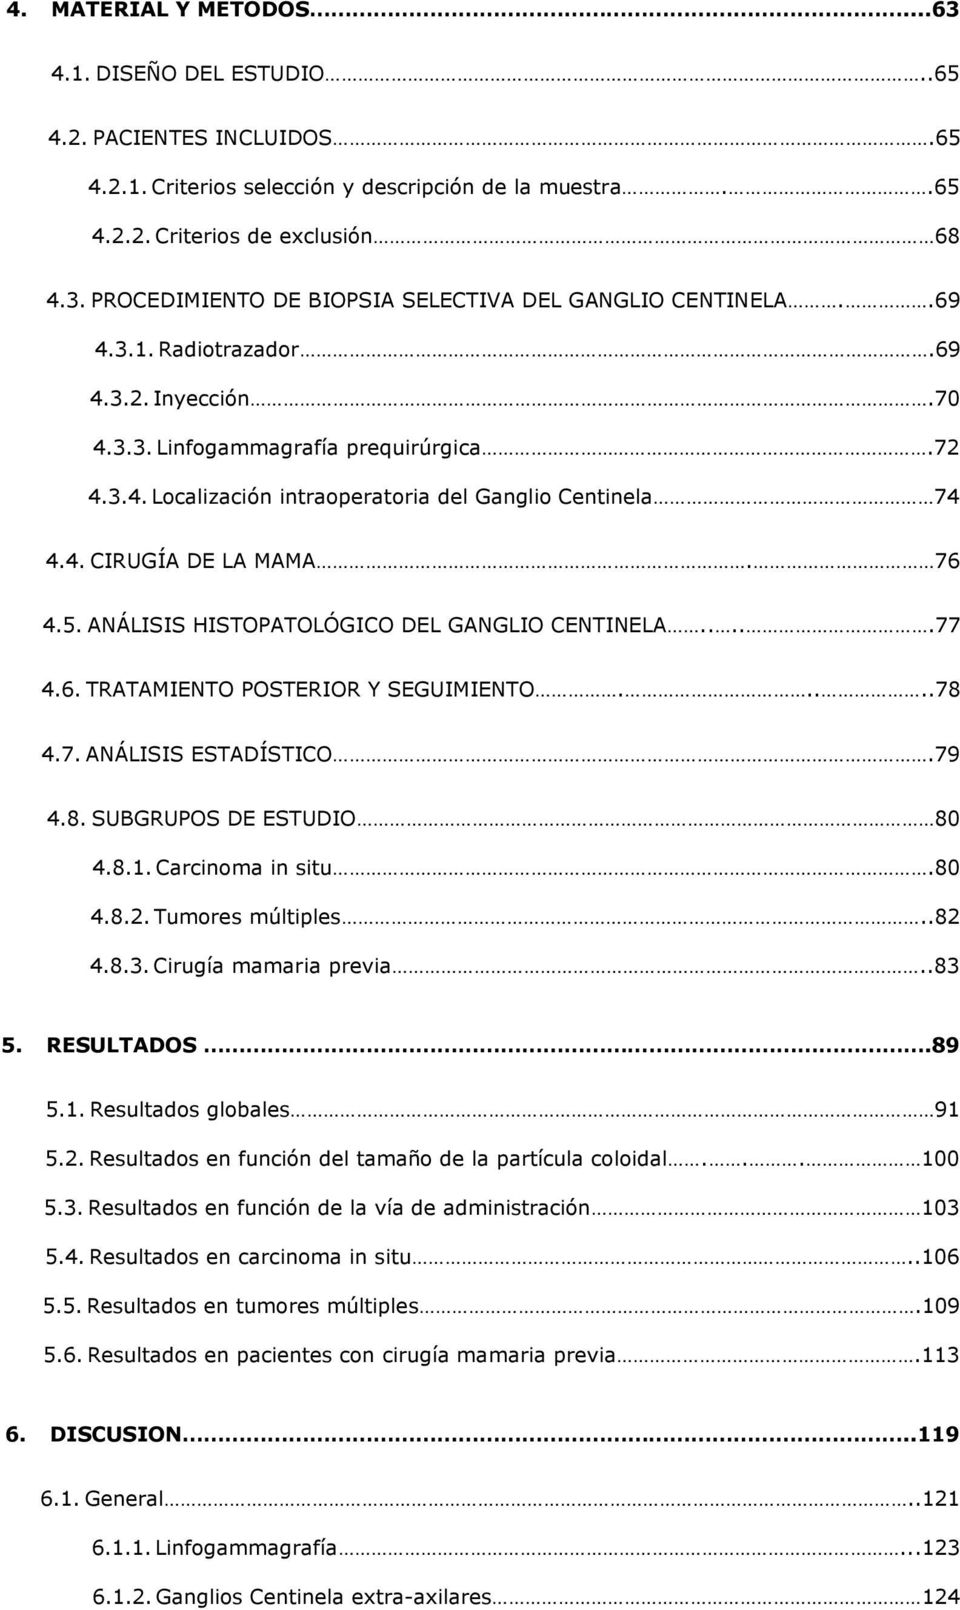 ANÁLISIS HISTOPATOLÓGICO DEL GANGLIO CENTINELA.....77 4.6. TRATAMIENTO POSTERIOR Y SEGUIMIENTO.....78 4.7. ANÁLISIS ESTADÍSTICO.79 4.8. SUBGRUPOS DE ESTUDIO 80 4.8.1. Carcinoma in situ.80 4.8.2.